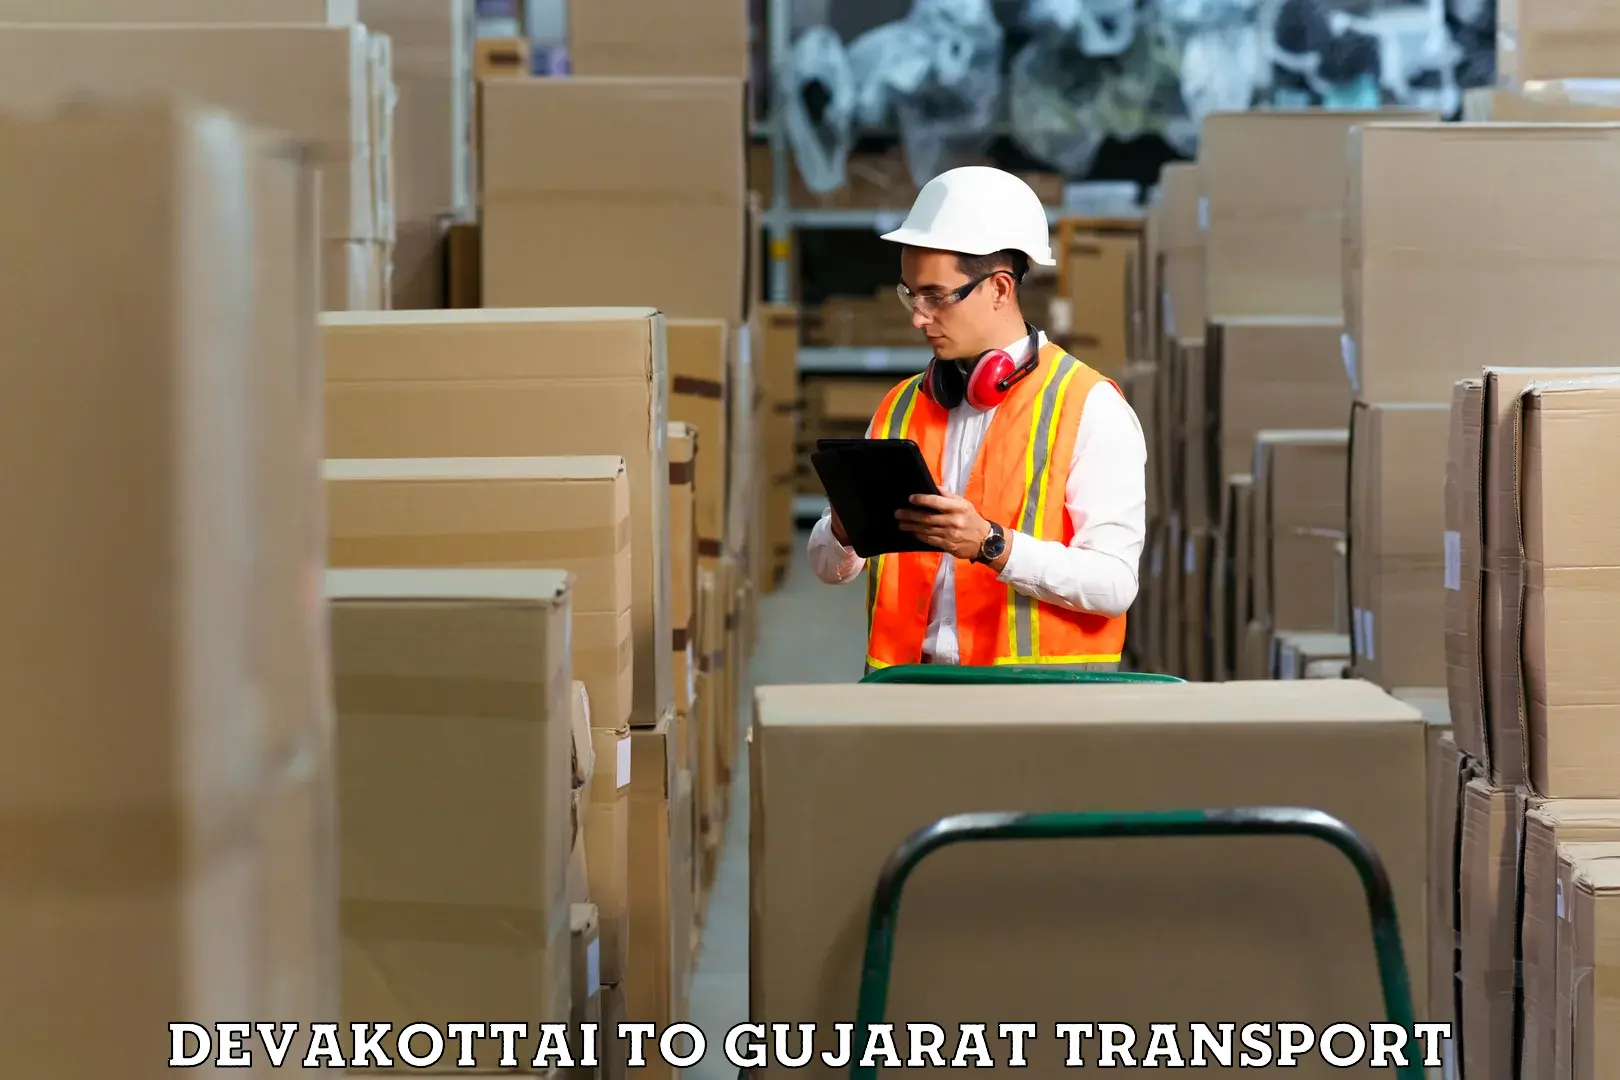 Parcel transport services in Devakottai to Anand